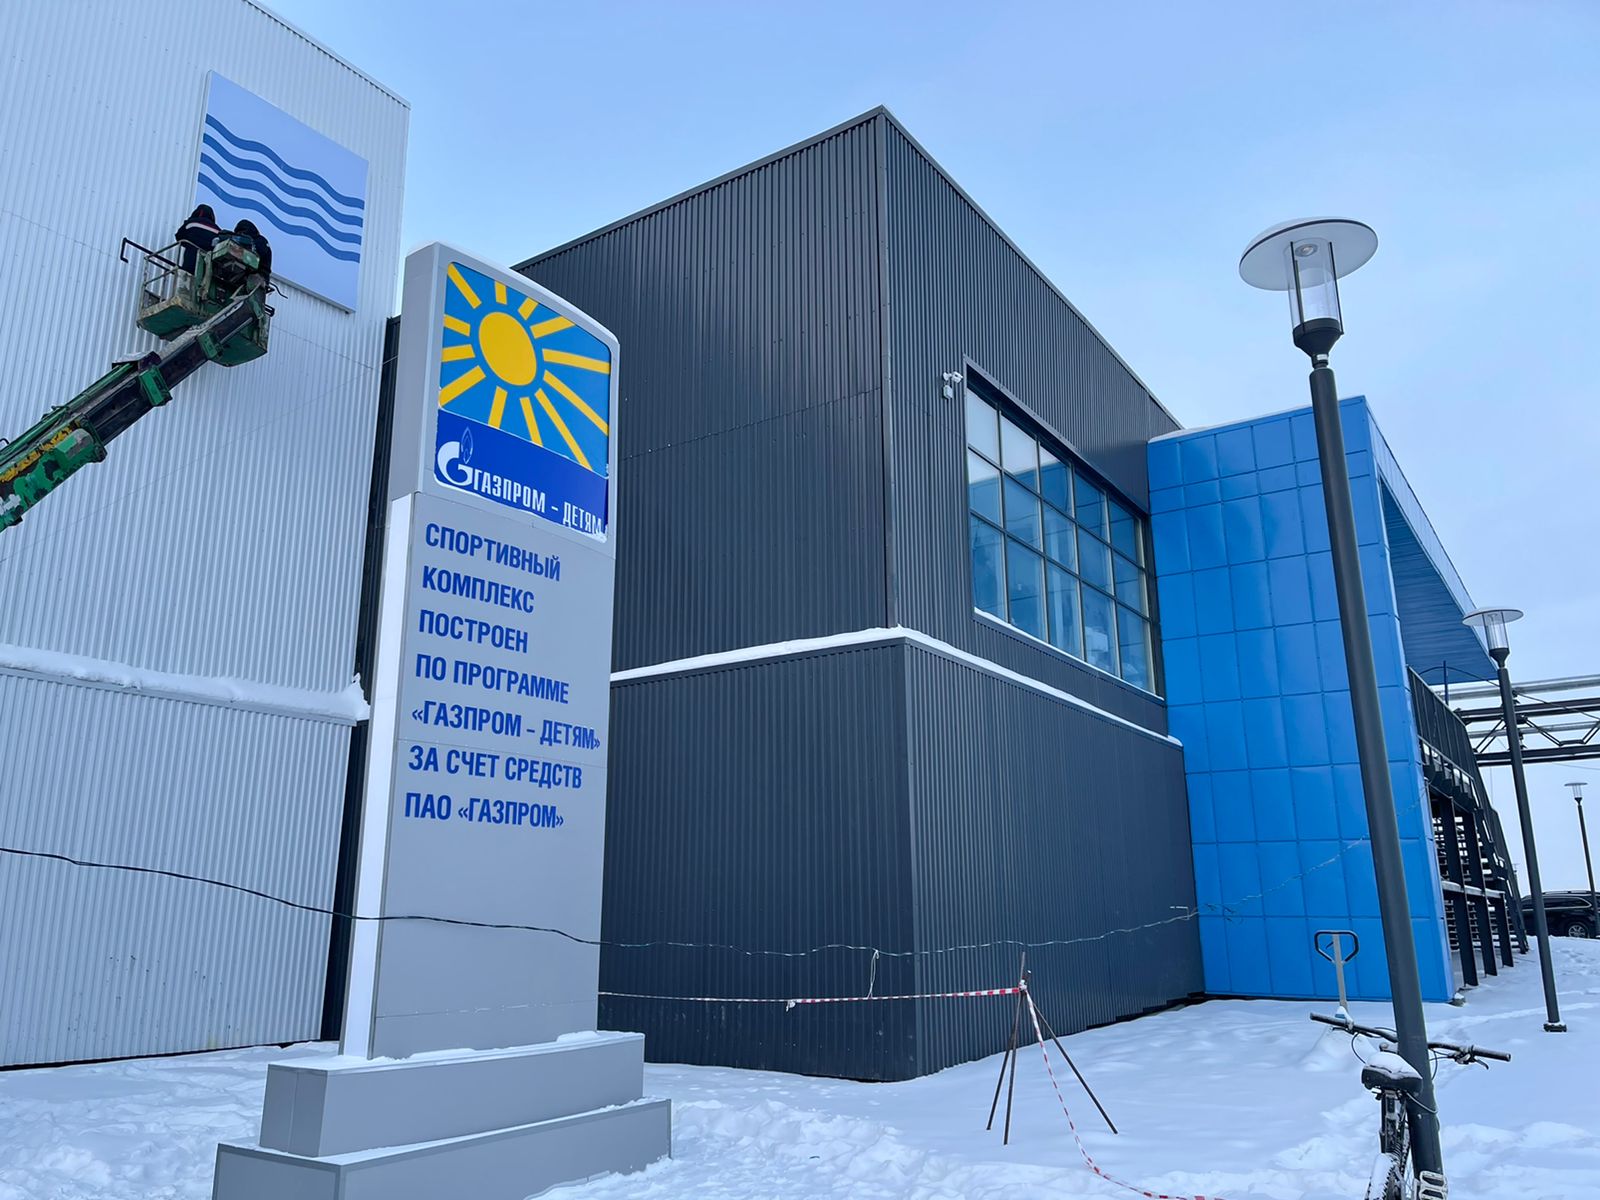 Строительство спортивного комплекса с крытым катком и бассейном завершают в Якутске